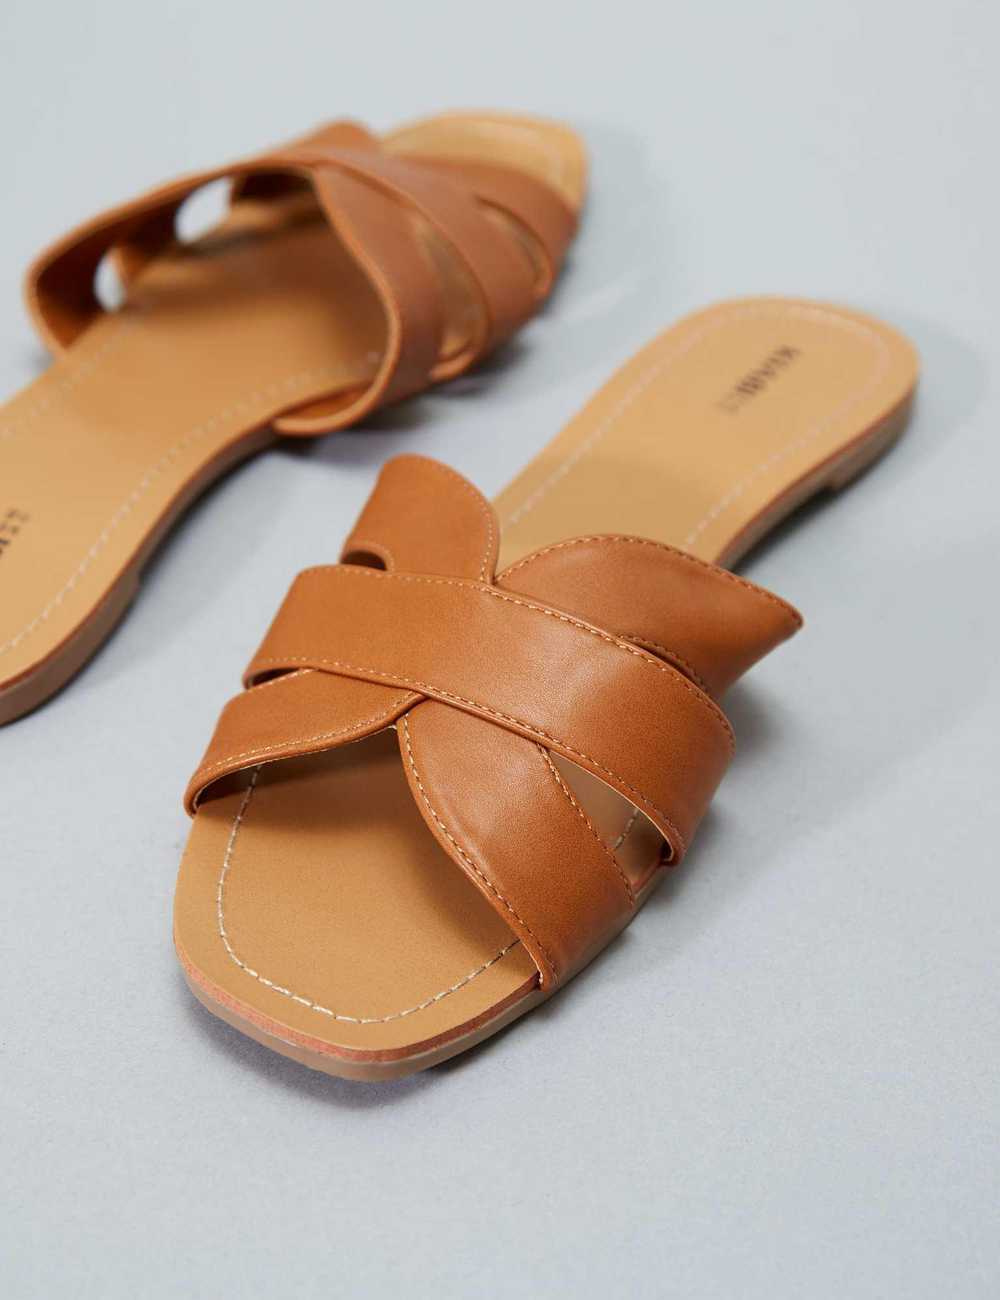 Shop Le Confort Embellished Cross Strap Comfort Sandals Online | Splash UAE